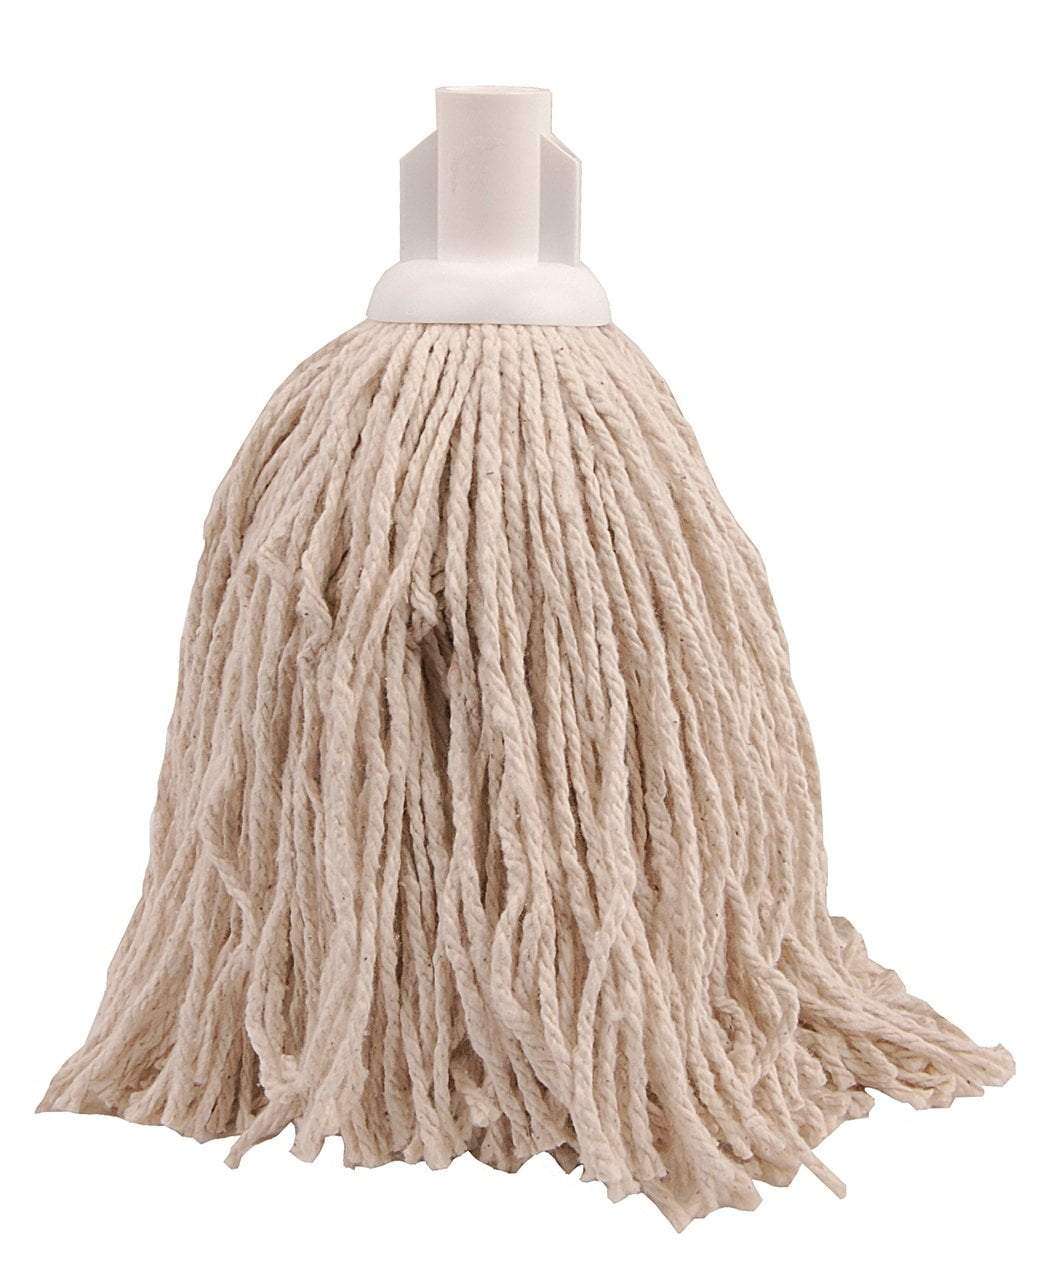 Cotton Mop Head Size 12 M12P (Parcel Rate)